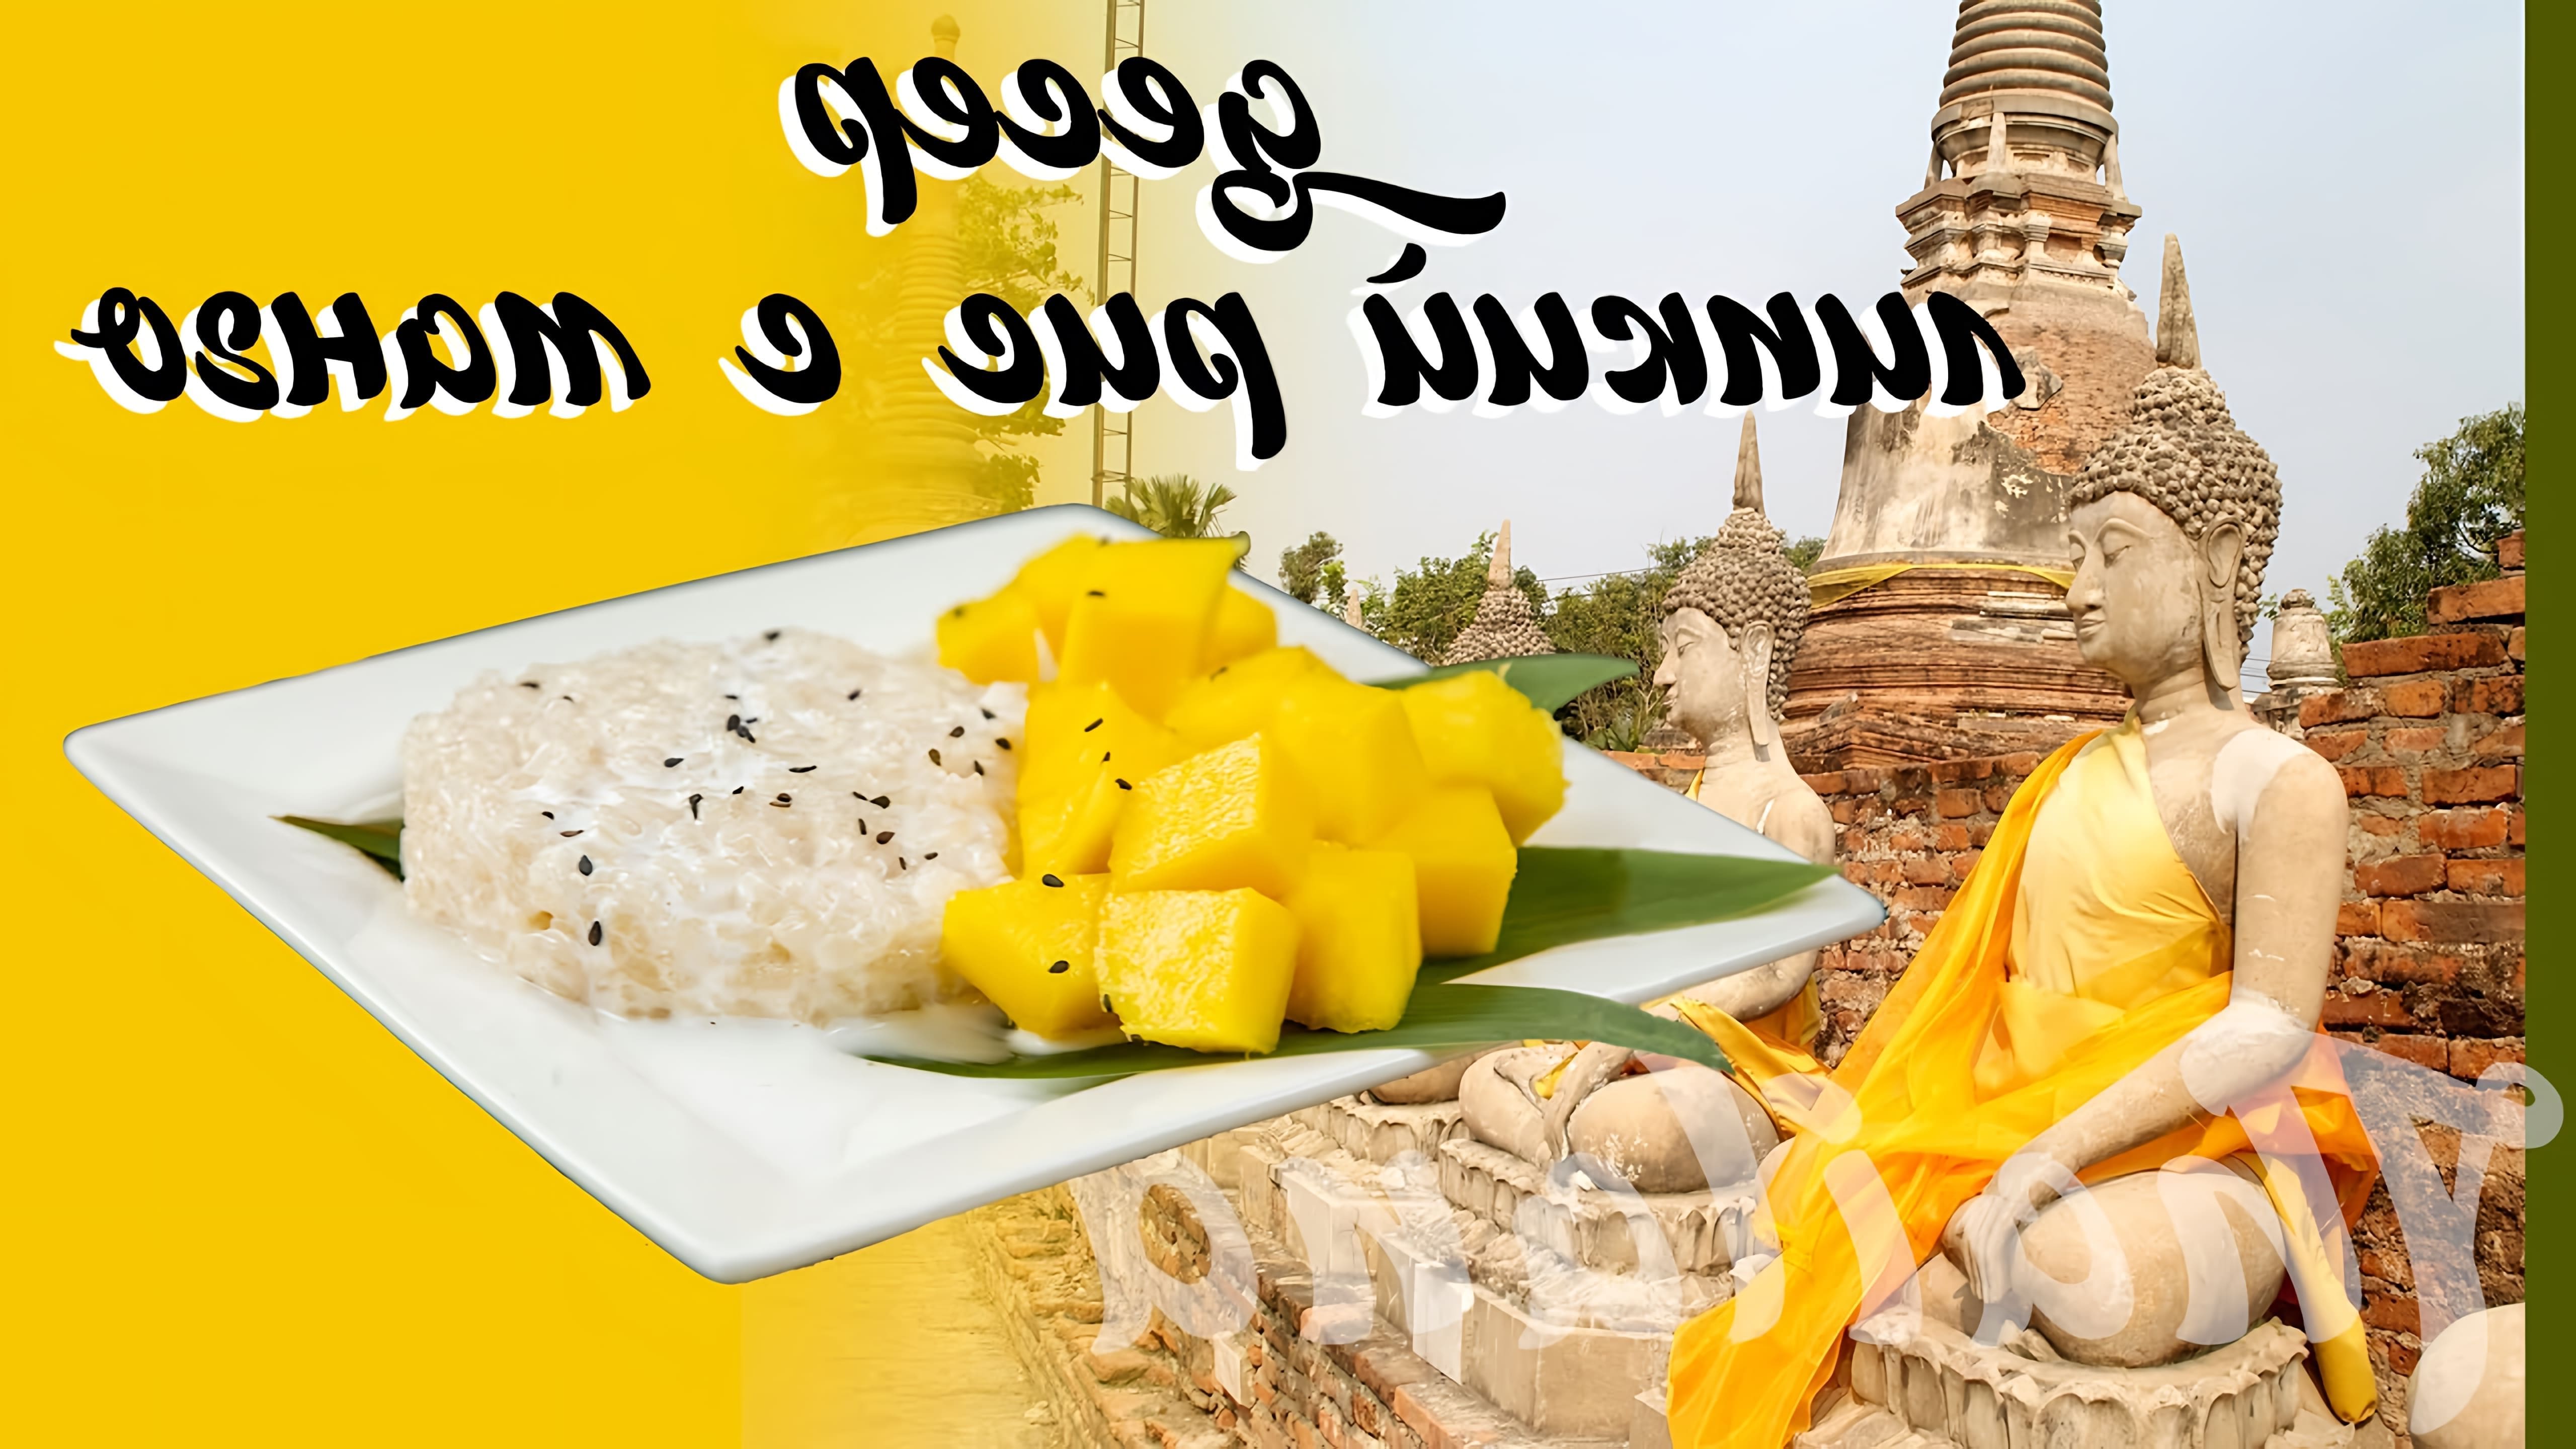 В этом видео демонстрируется рецепт тайского десерта "Липкий рис с манго" или "Mango Sticky Rice"